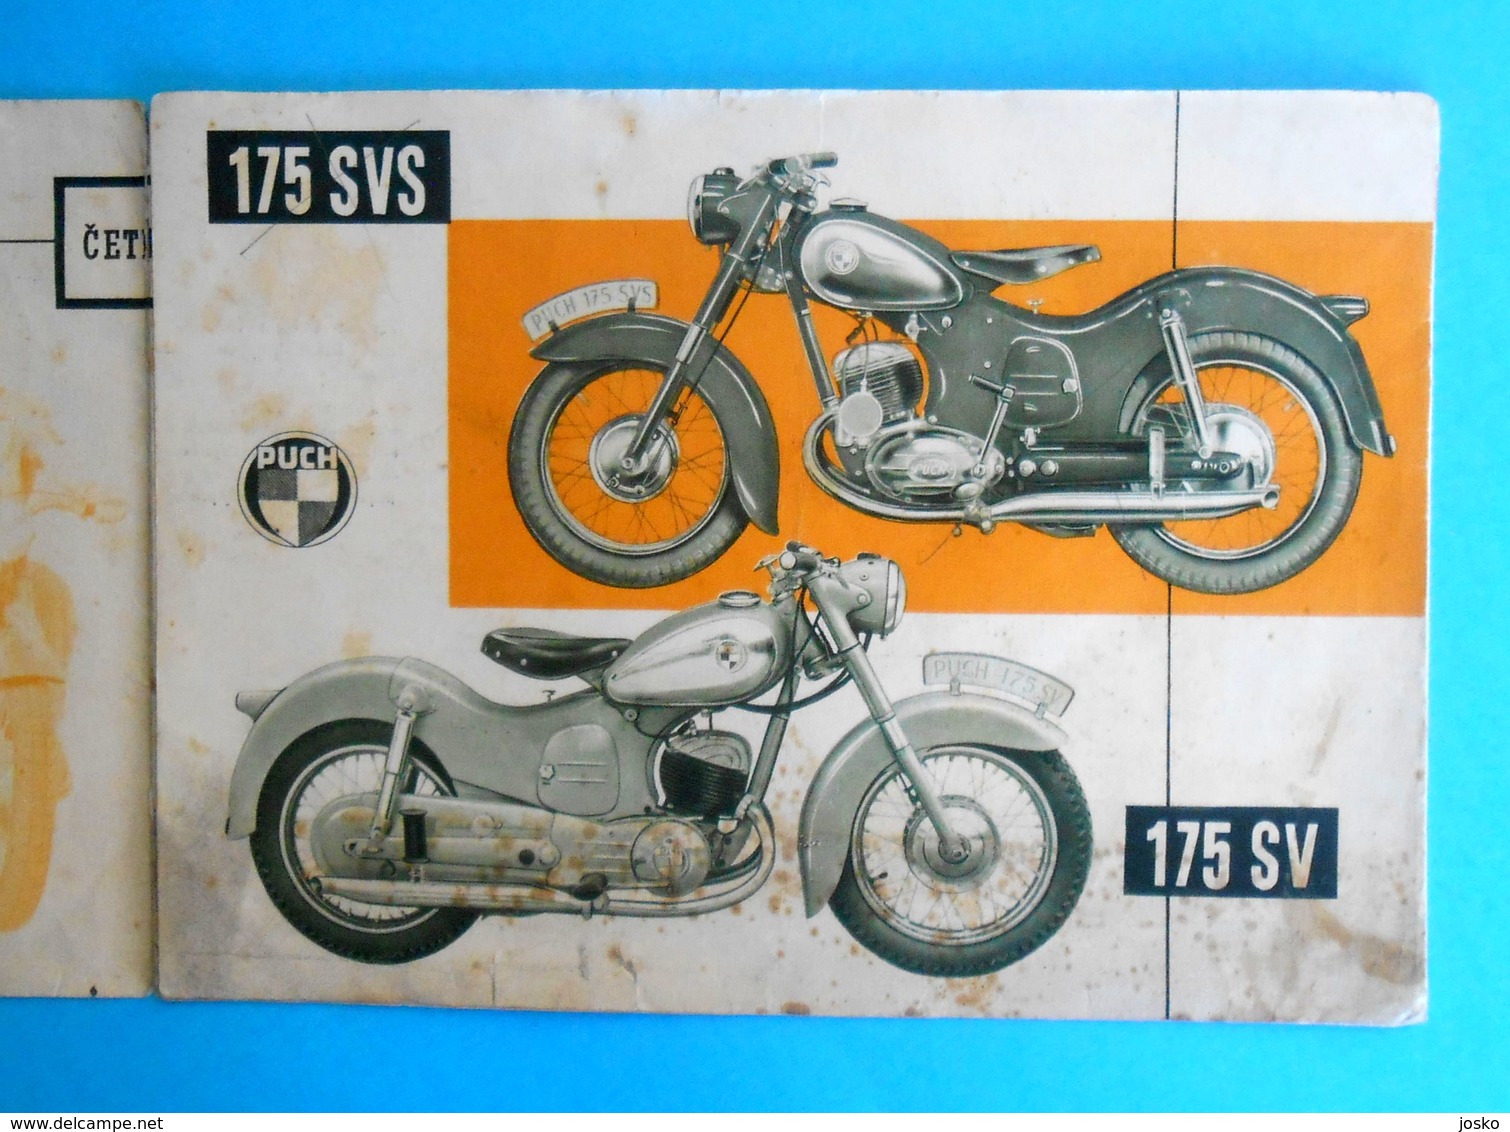 Yugoslav original vintage brochure ... PUCH 175 SV-SVS Austria motorcycle * moto motorrad motociclo motorbike Osterreich